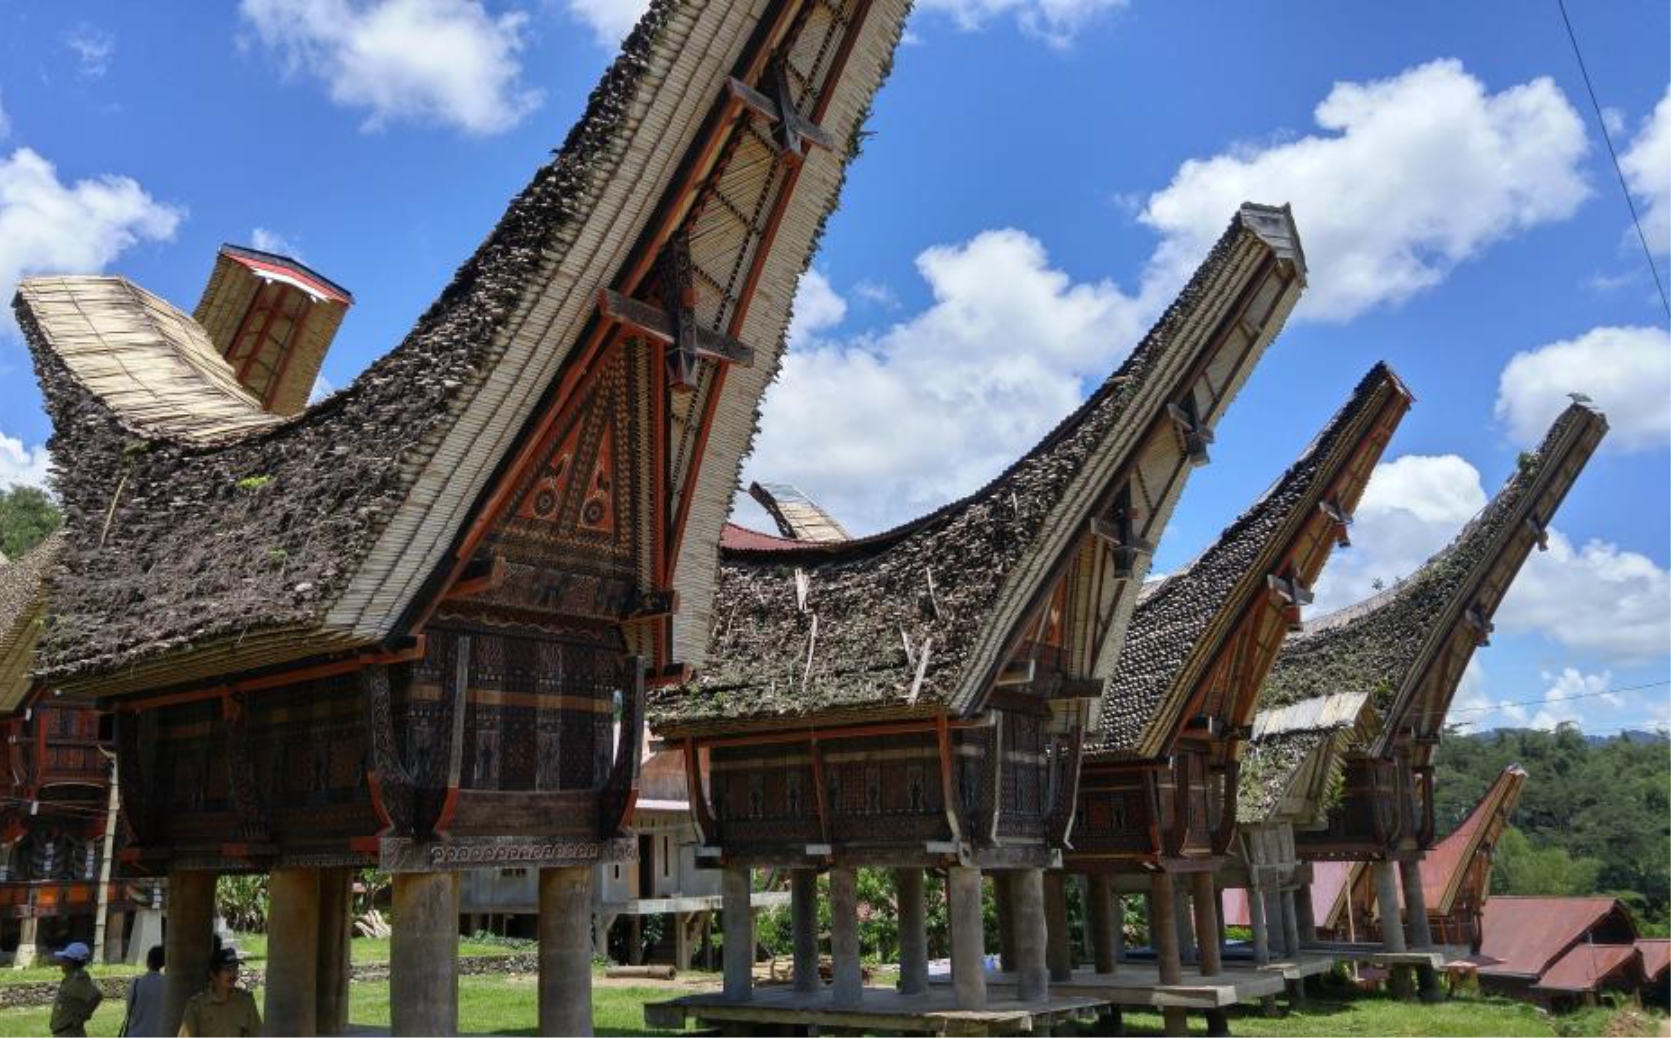 Rumah Adat Sulawesi Selatan Ciri Khasnya Gambar LENGKAP 